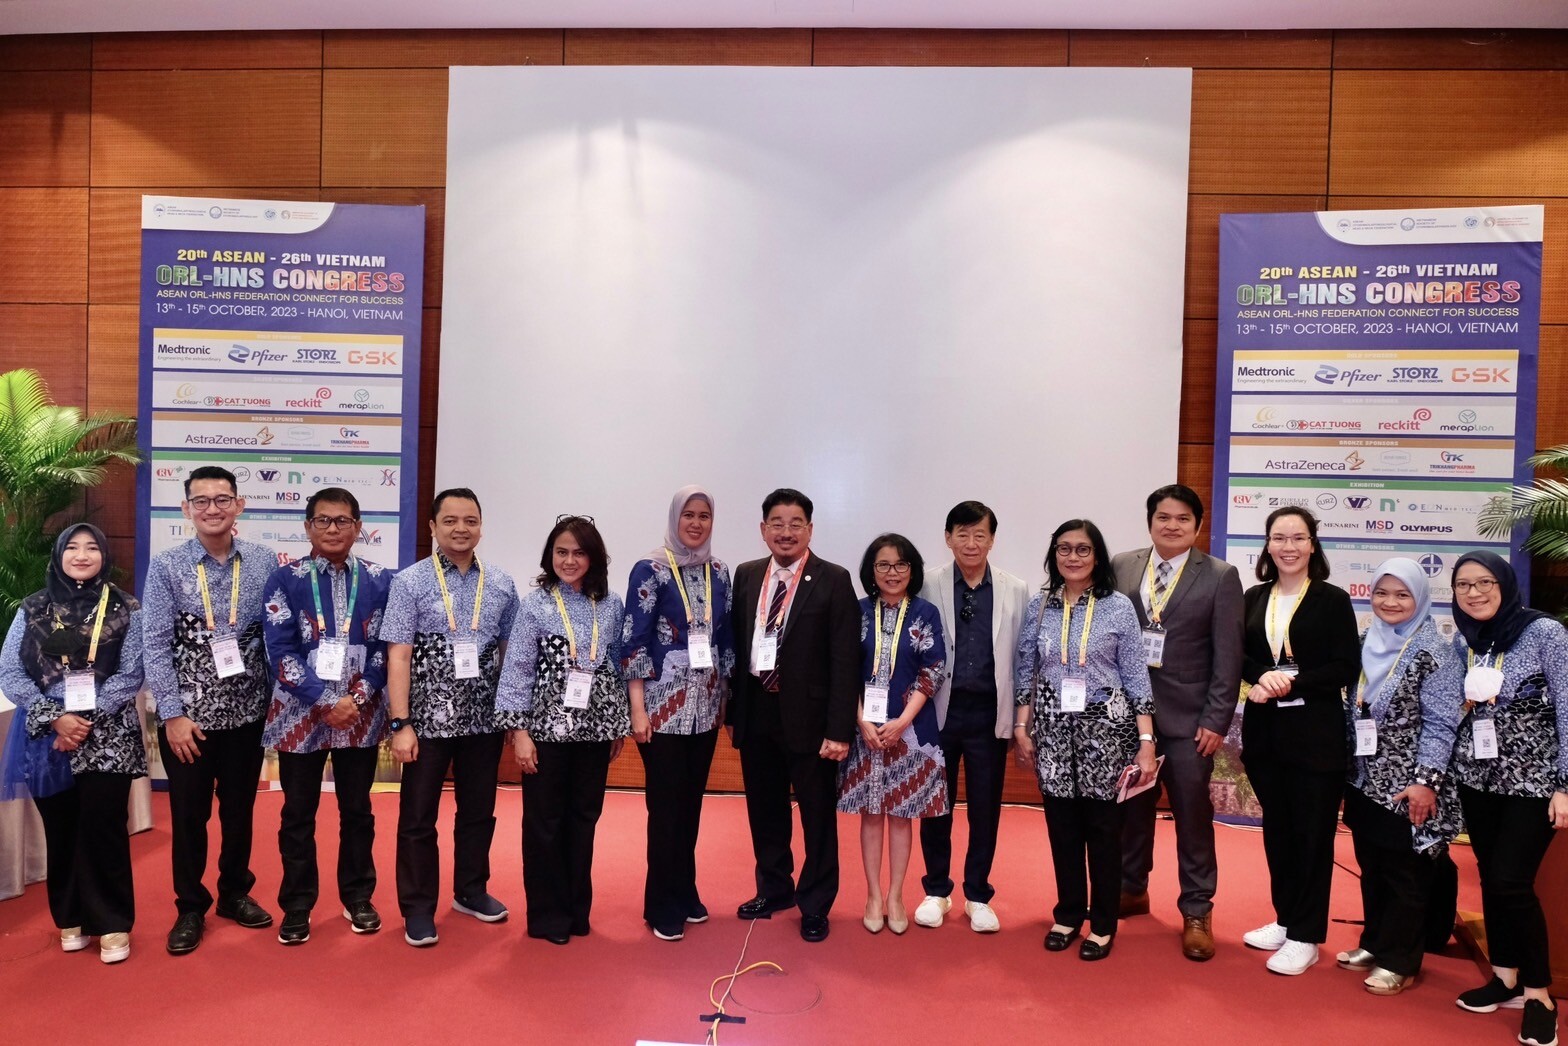 TRP (ธีรพร) ร่วมประชุม "20th ASEAN ORL-HNS Congress" ตอกย้ำผู้นำศัลยกรรมตกแต่งใบหน้าของเมืองไทย